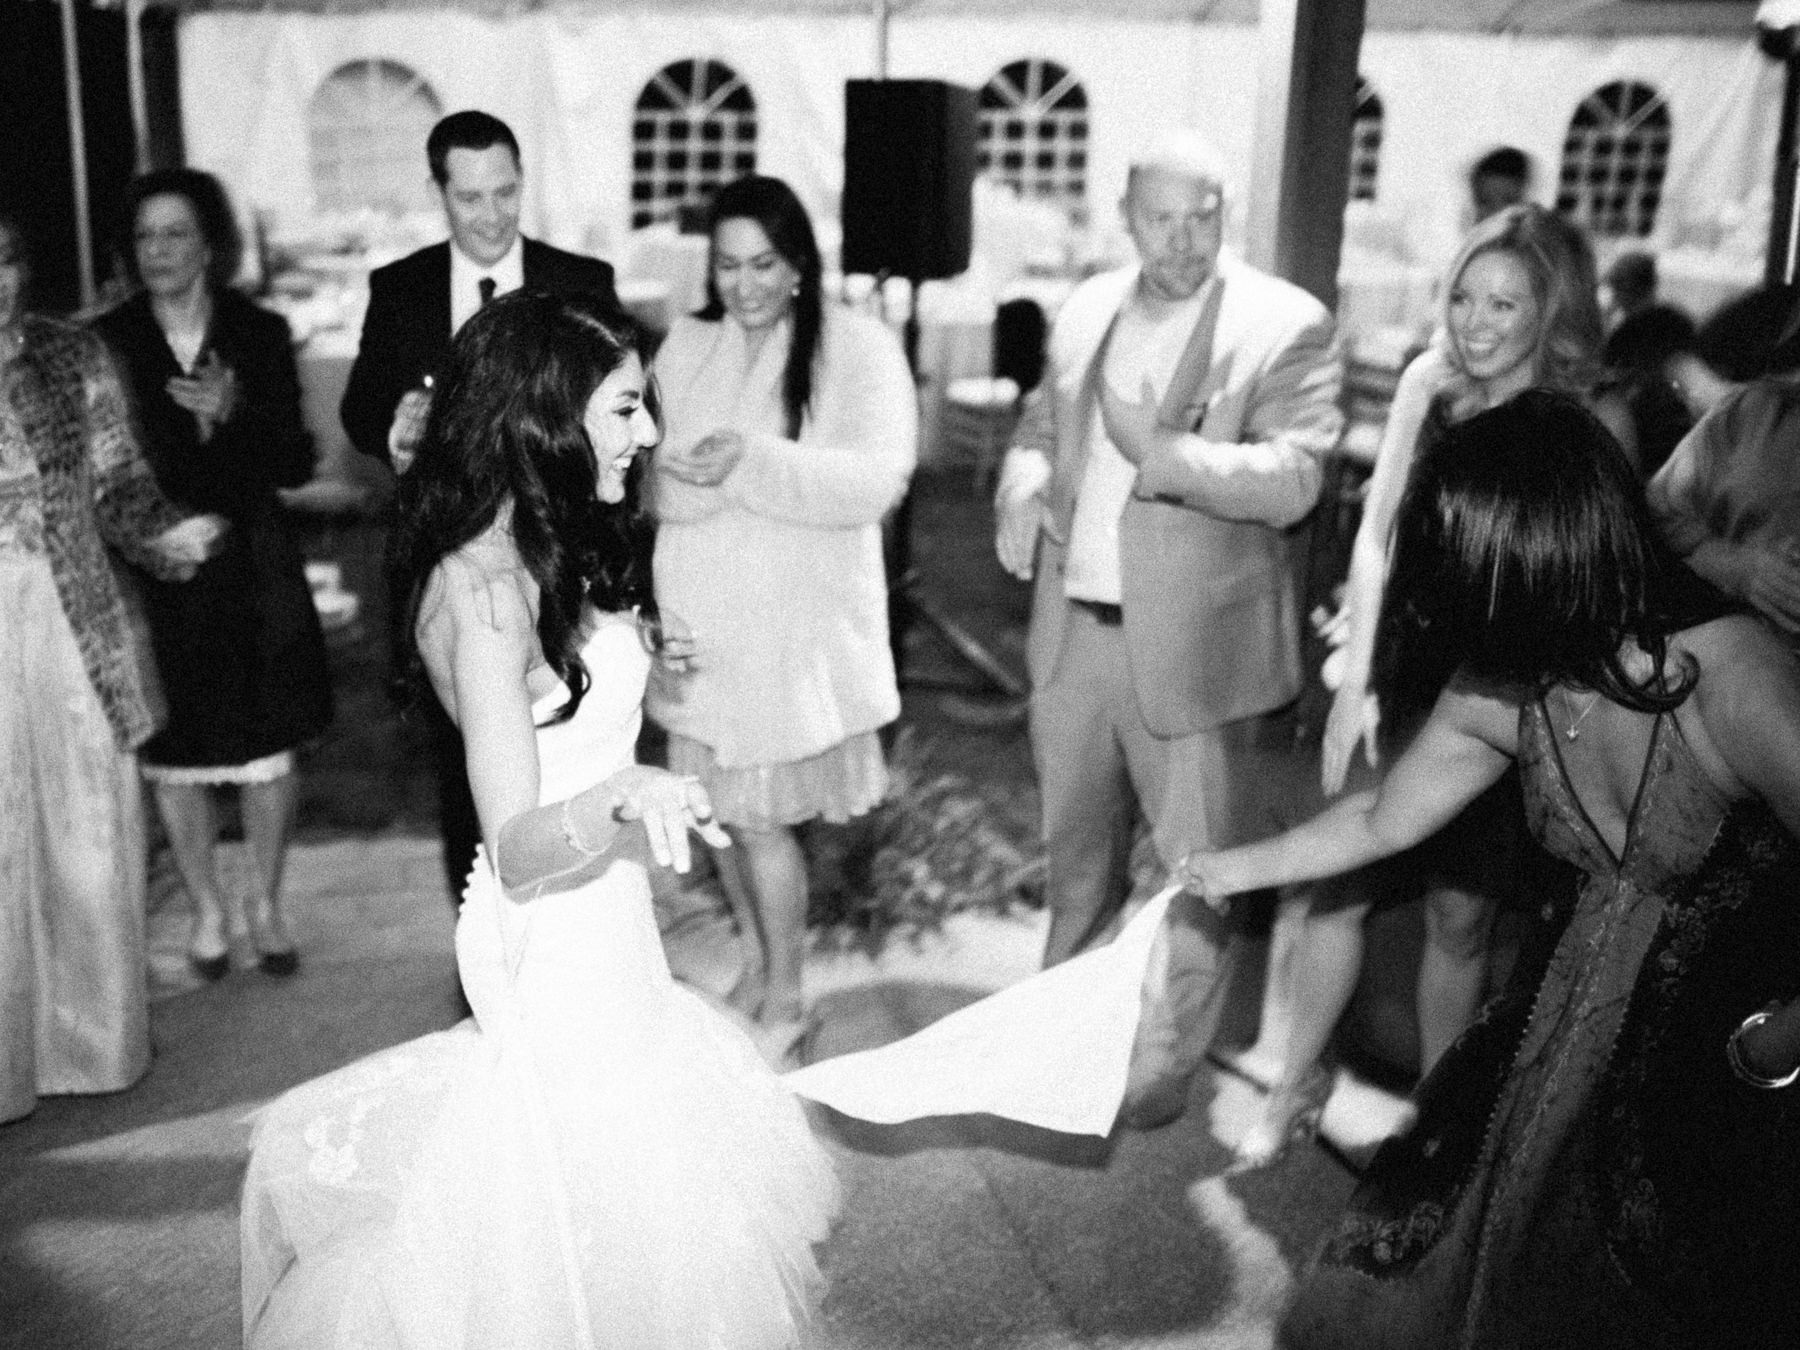 Dancing Bride at Wedding Reception